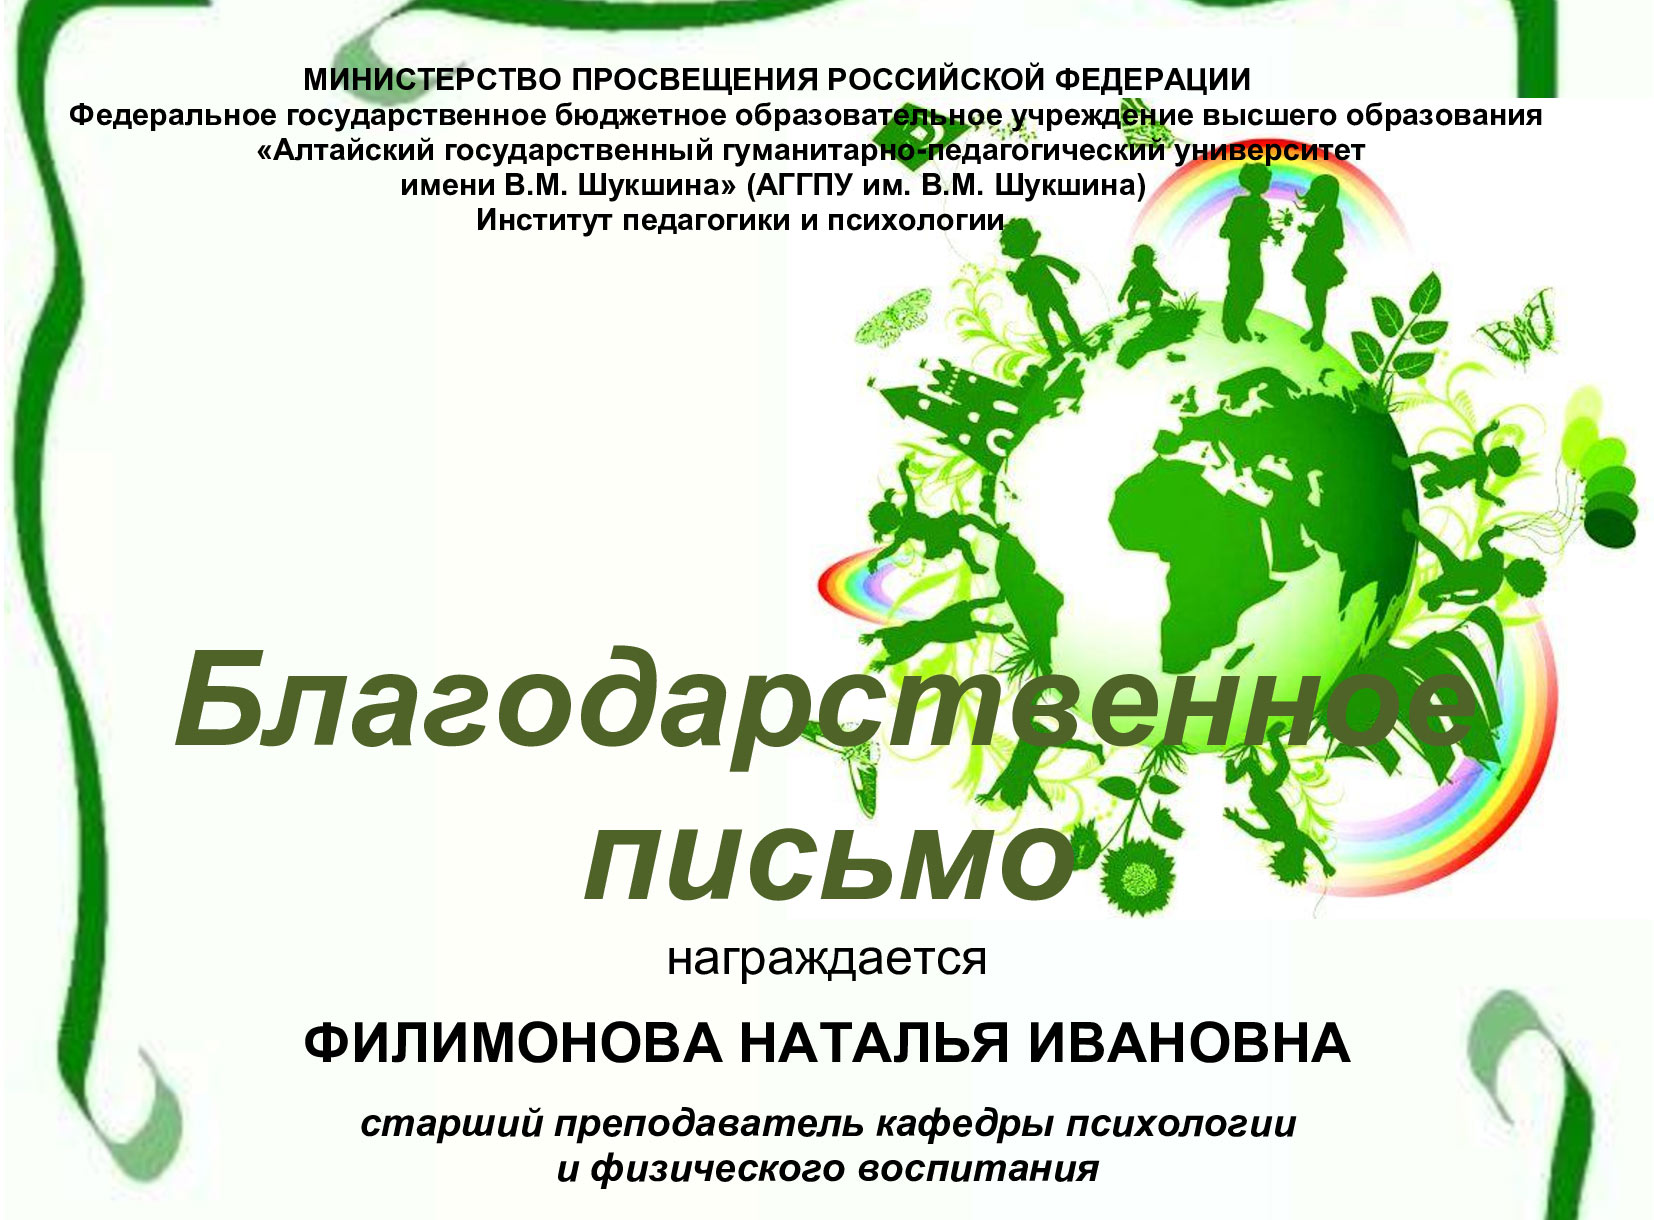 Участие студентов во II Всероссийском с международным участием конкурсе исследовательских, проектных и научно-методических работ